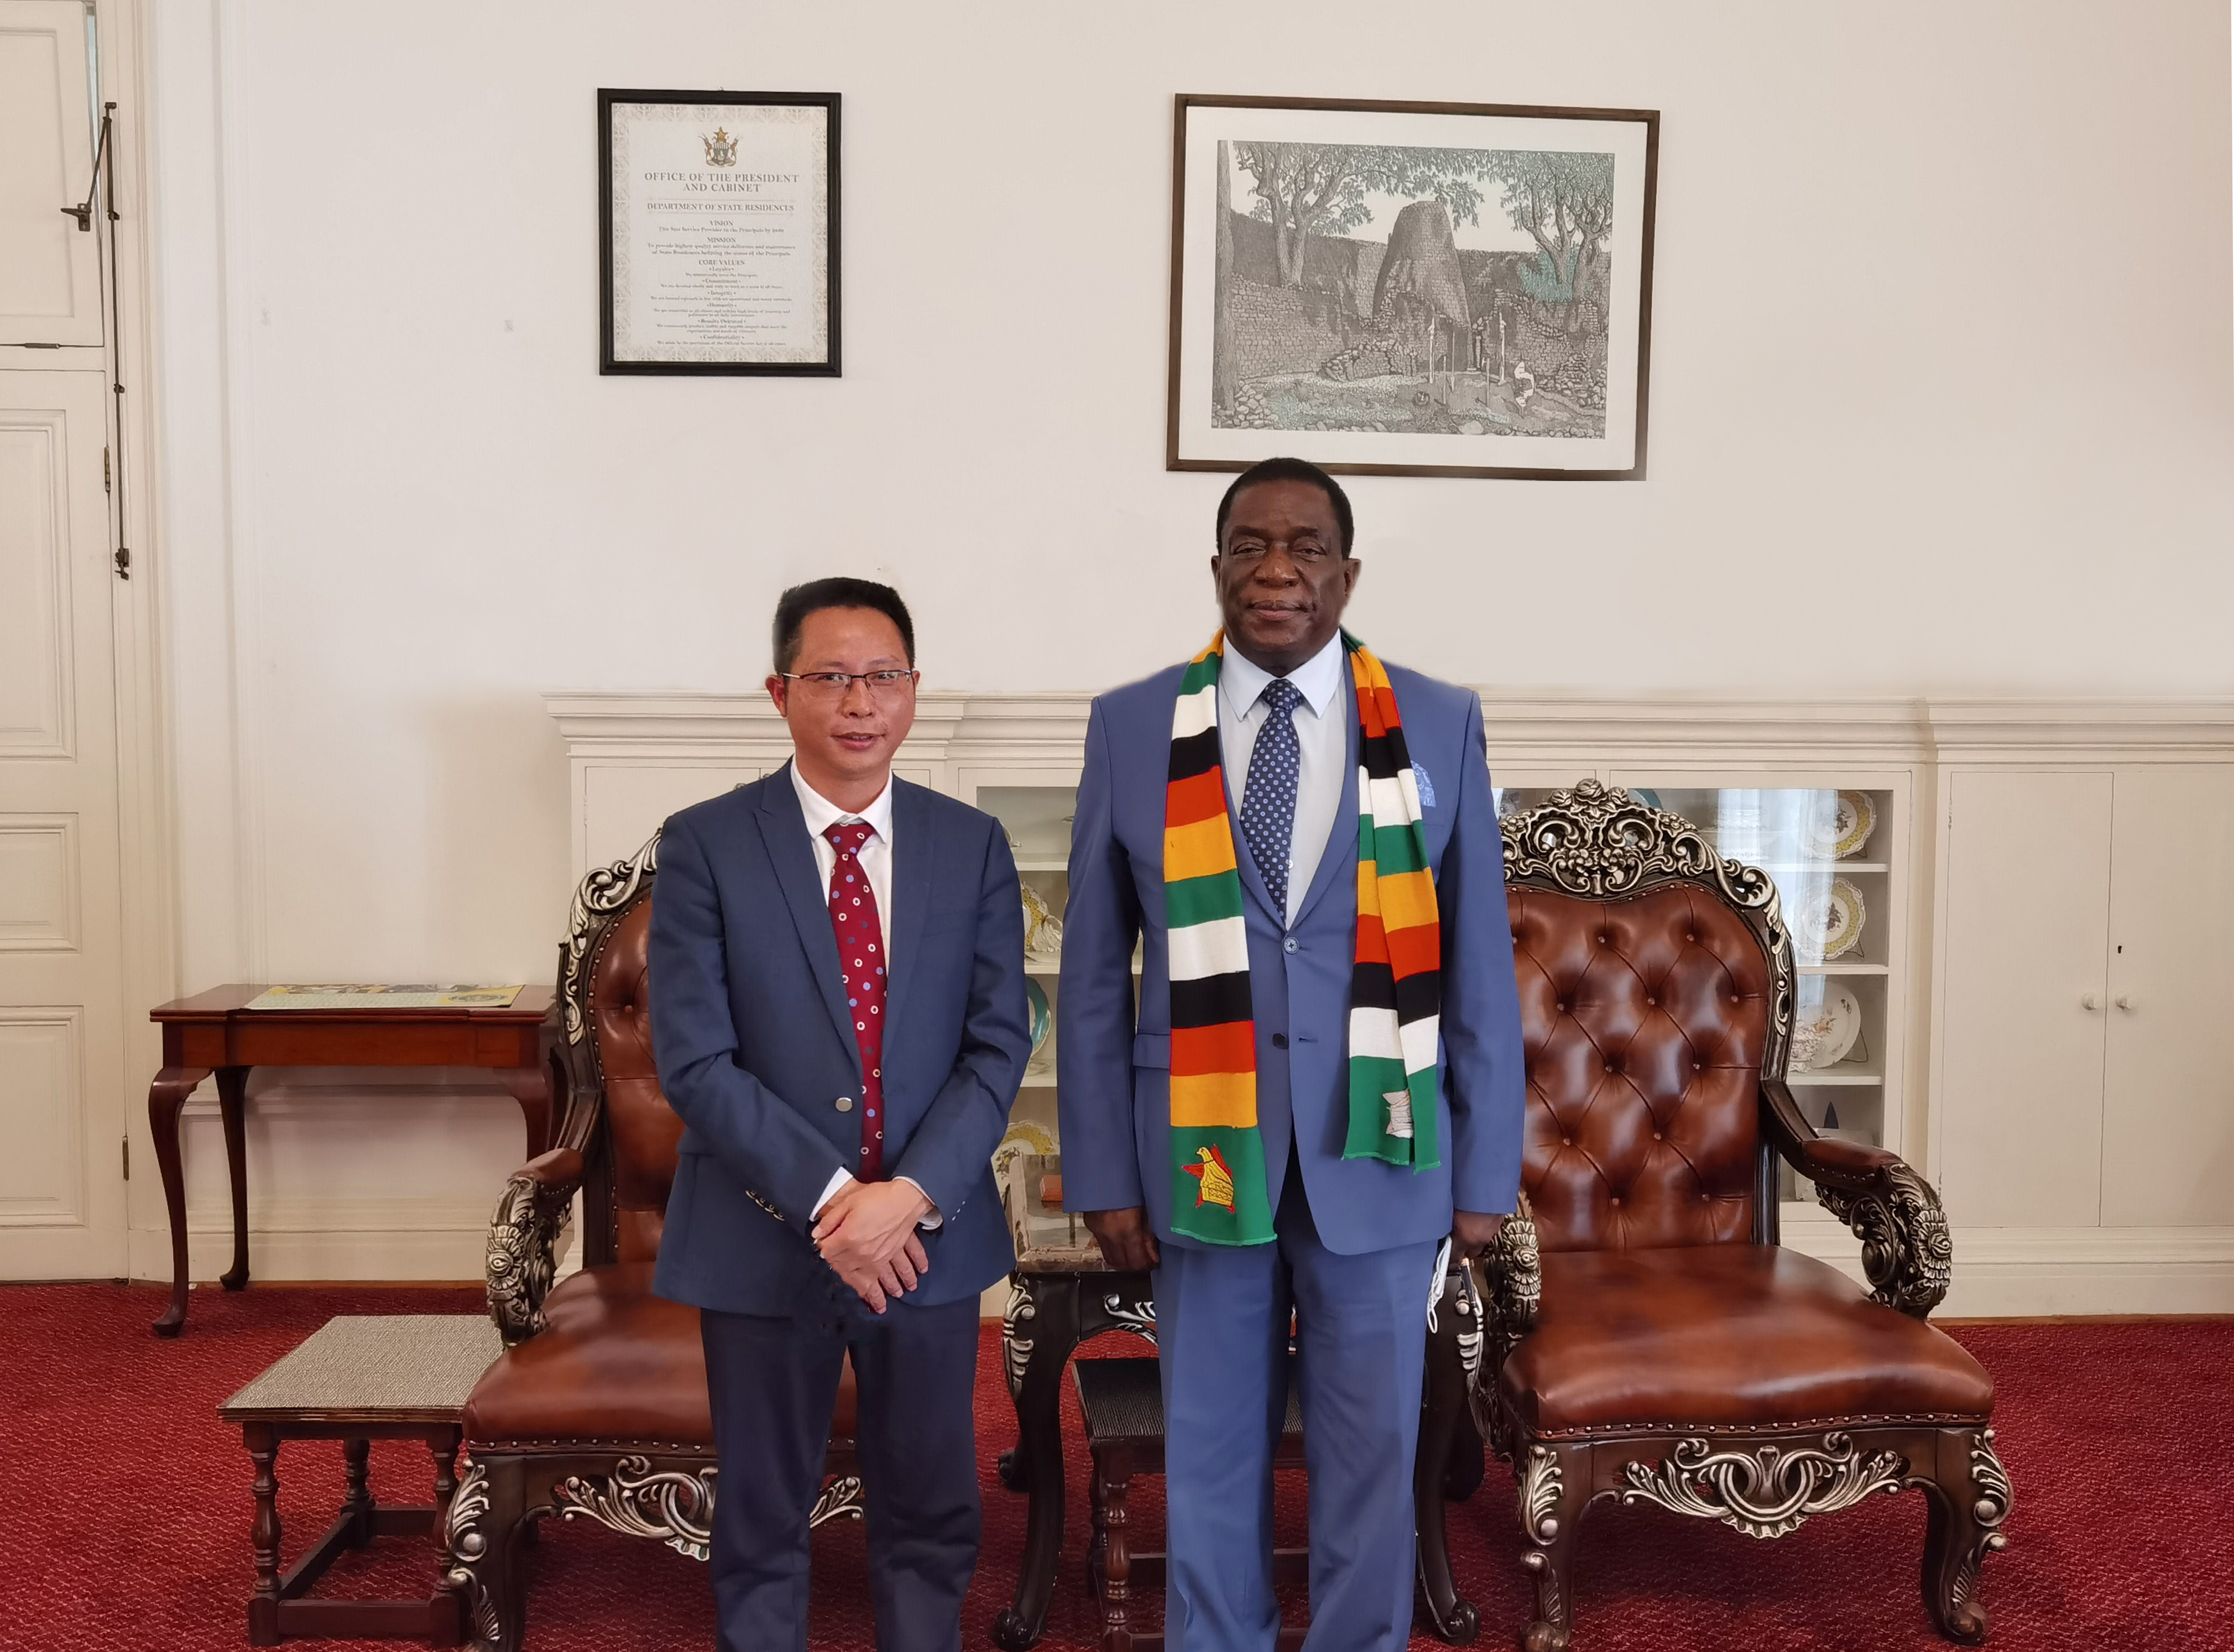 津巴布韦总统亲切会见米6体育资源Bikita矿业有限公司总经理王振华